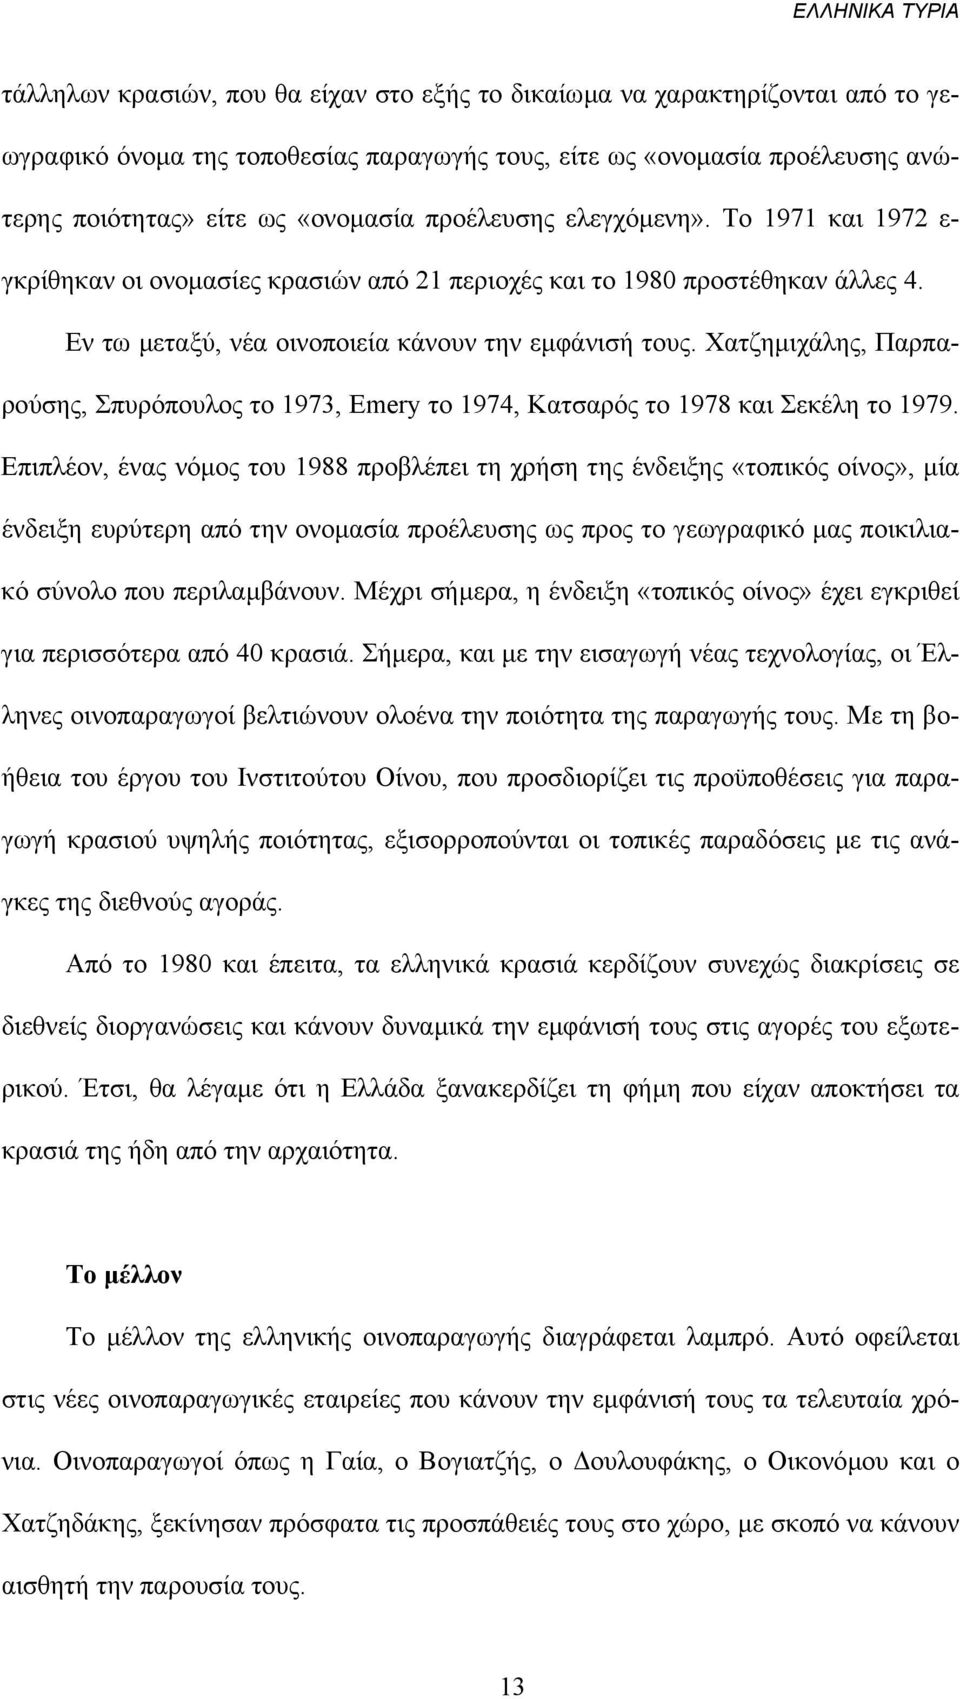 Χατζηµιχάλης, Παρπαρούσης, Σπυρόπουλος το 1973, Emery το 1974, Κατσαρός το 1978 και Σεκέλη το 1979.